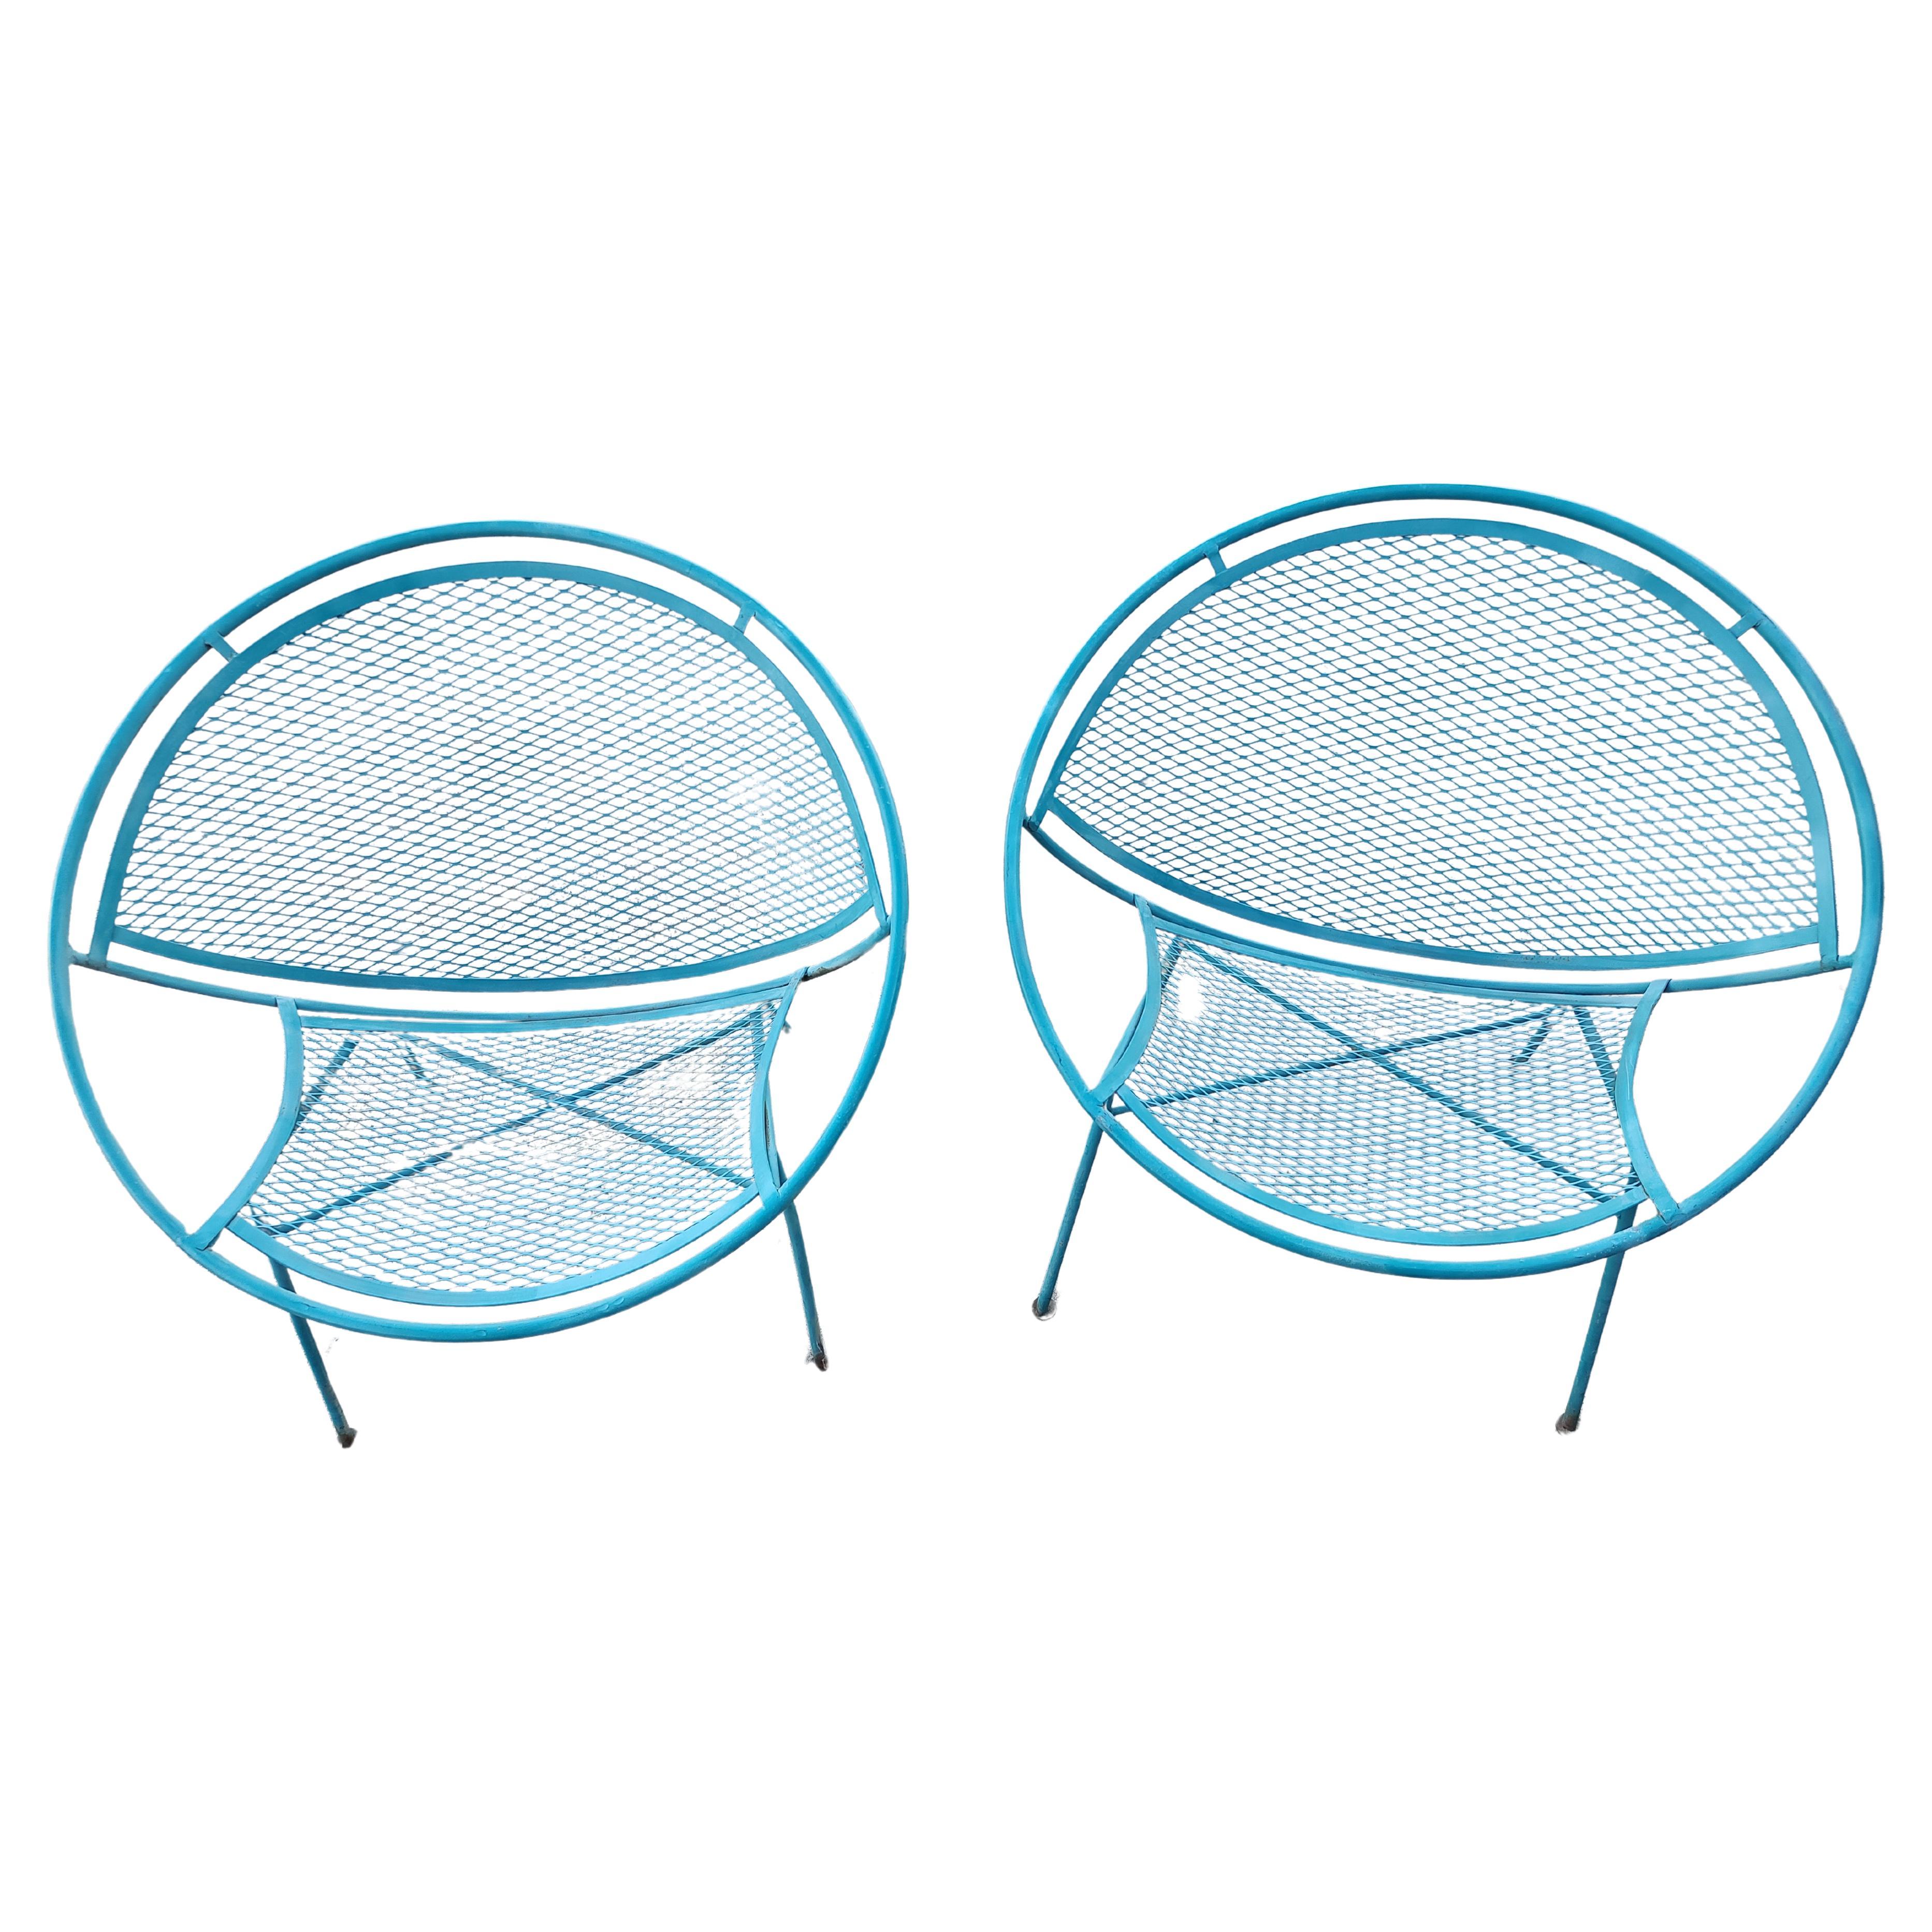 Fabelhaftes modernes Design aus der Mitte der fünfziger Jahre von Maurizio Tempestini. Seine Radar-Stühle sind sofort bekannt und sehr begehrt. 2er-Sets, zwei Paar verfügbar, Preis und Verkauf als Paar. In ausgezeichnetem Vintage-Zustand, nur alte